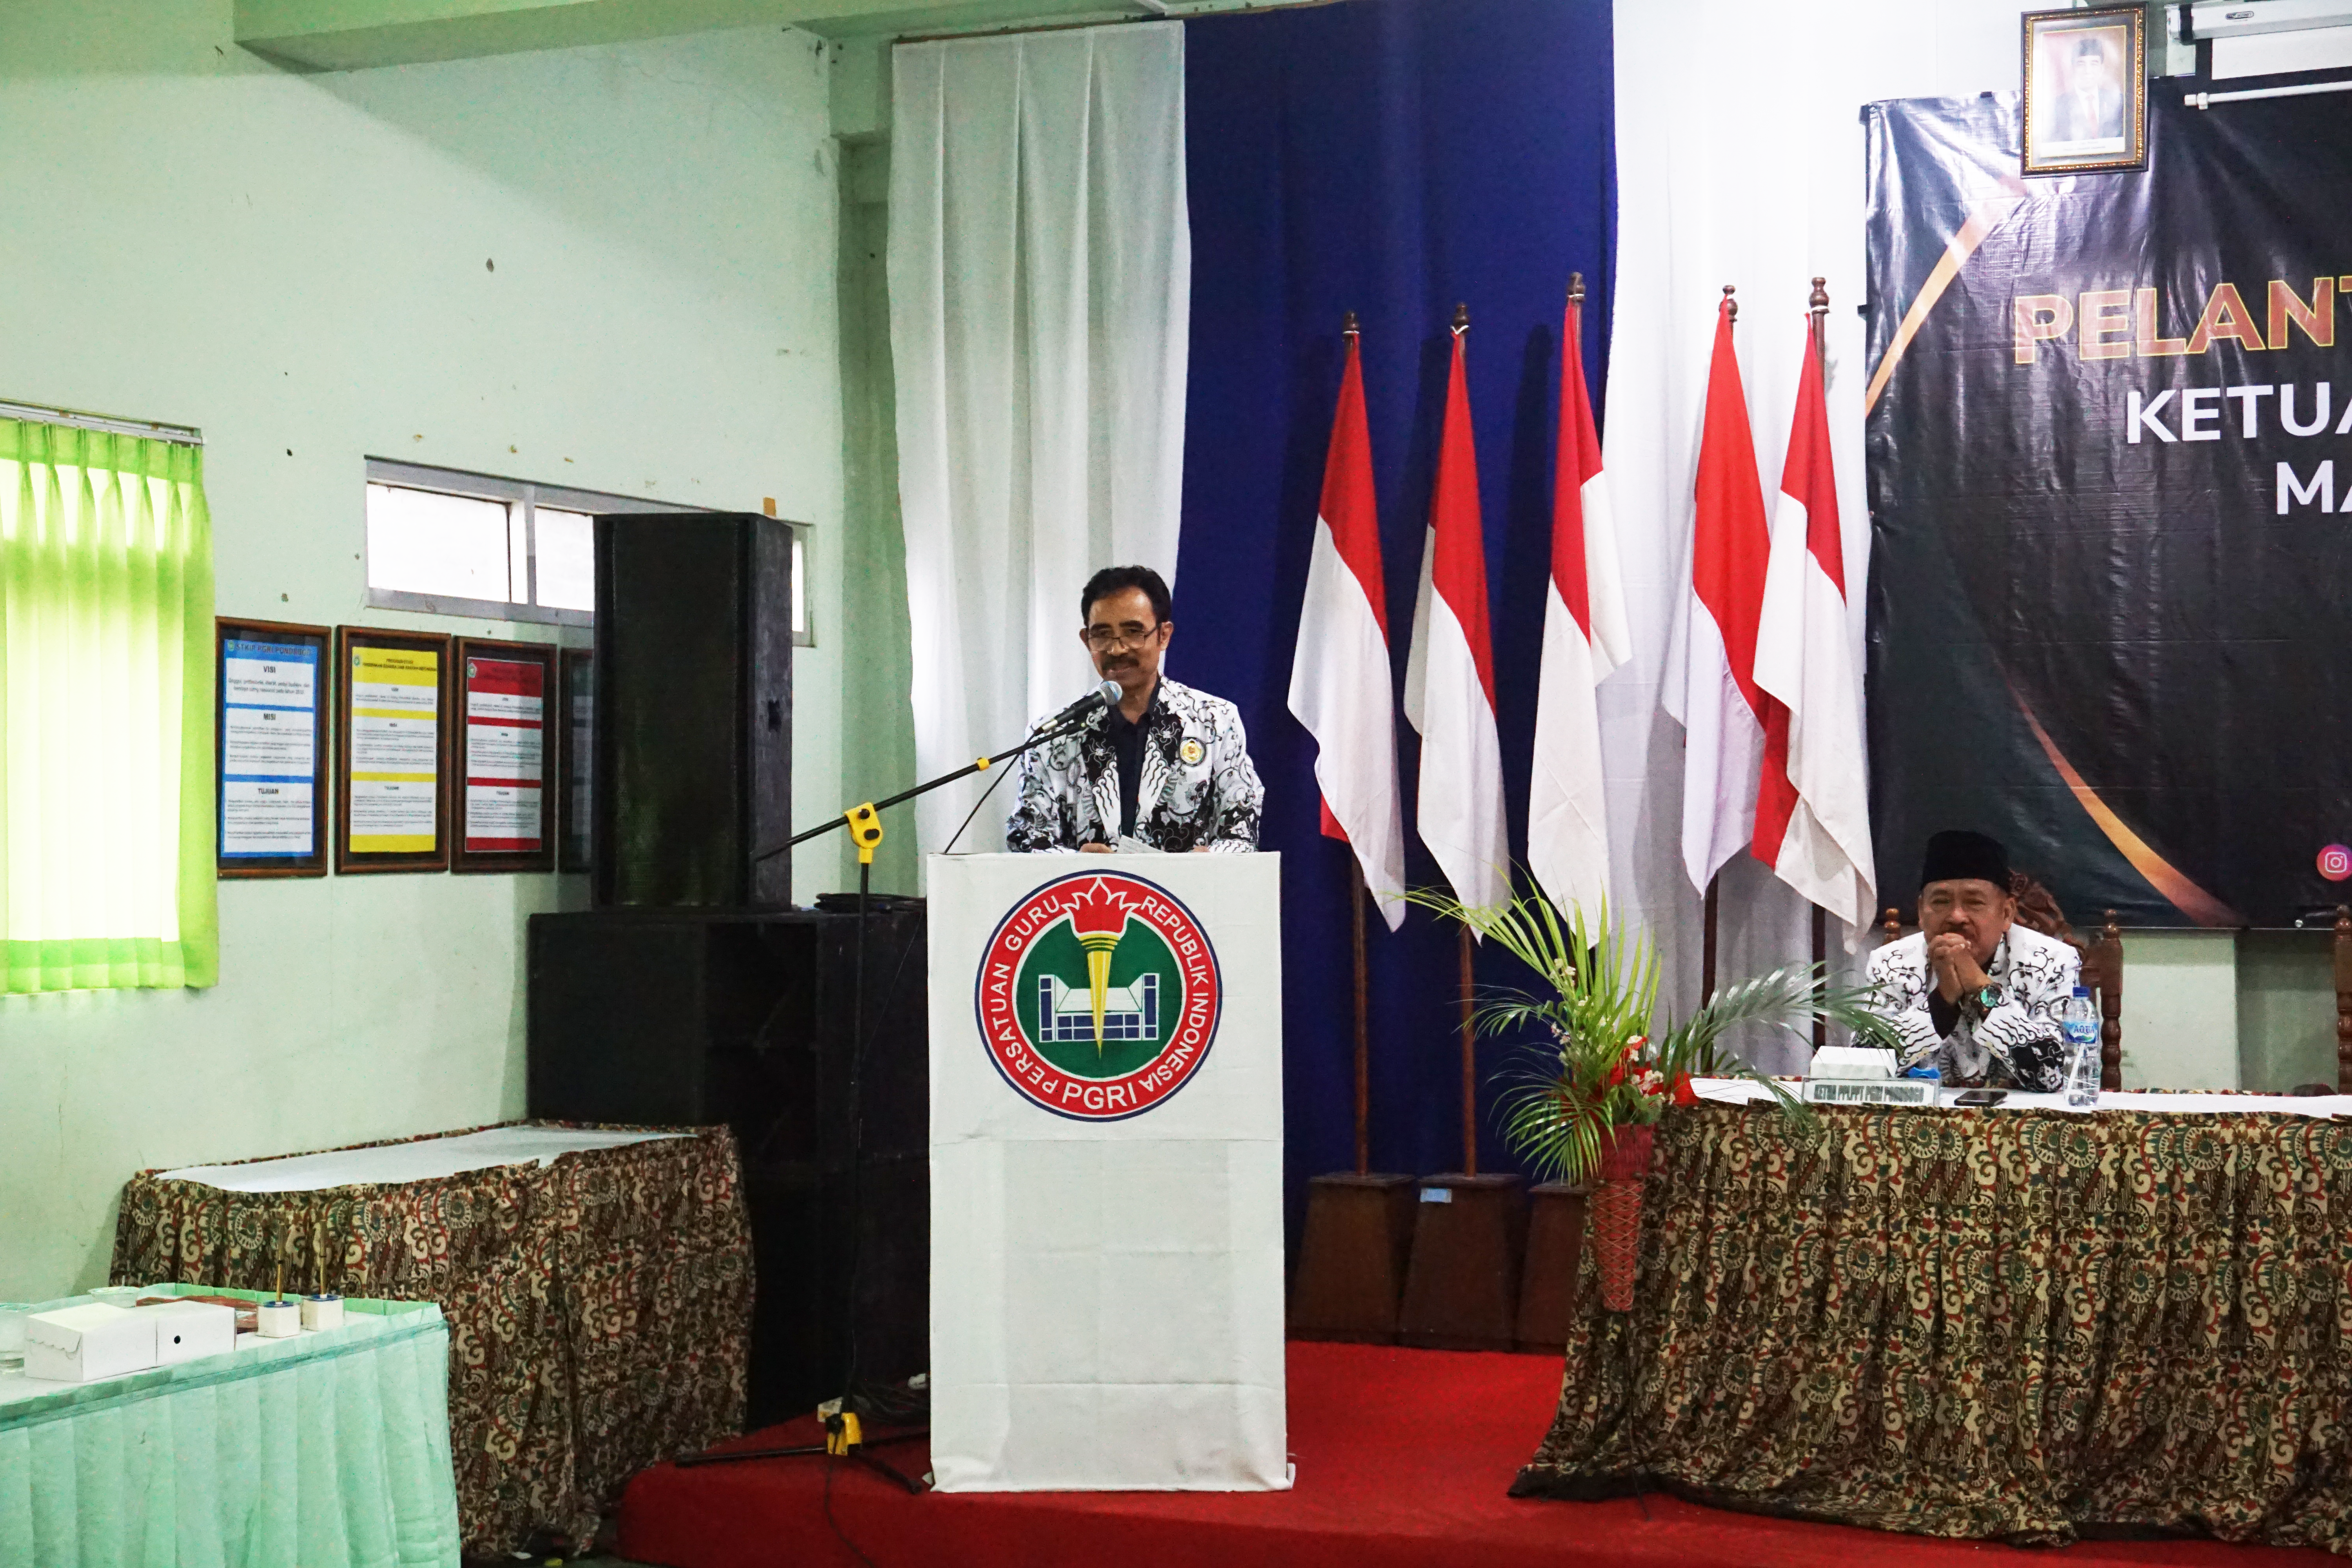 Sambutan dari Ketua PGRI Jawa TImur, Teguh Sumarmo